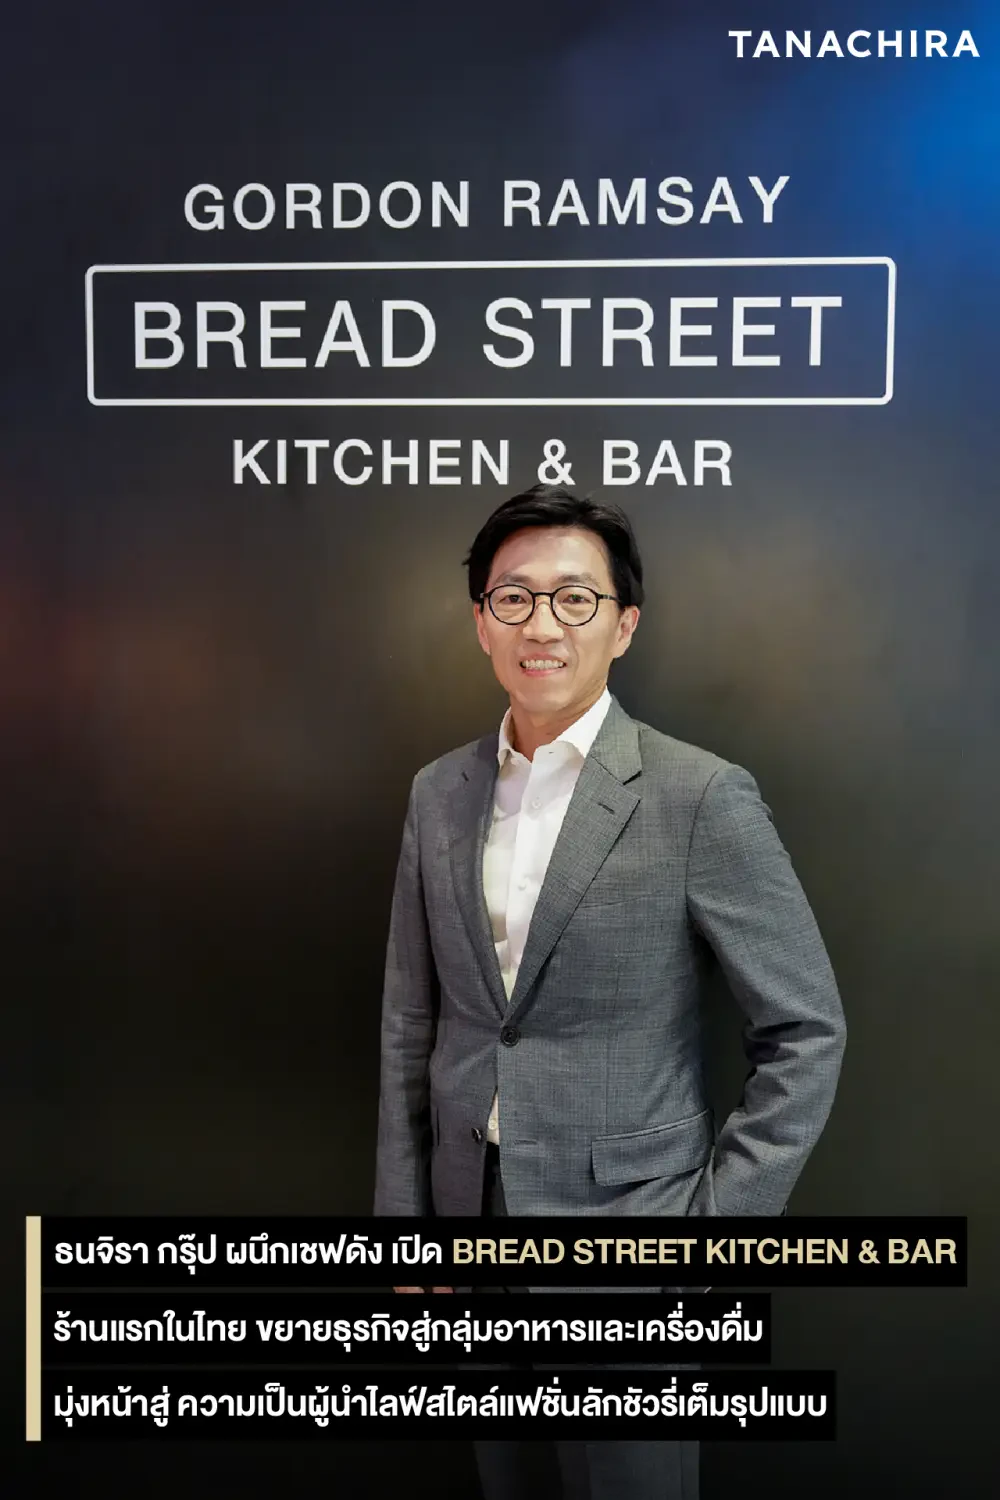 ร้านอาหารจากเชฟชื่อดังระดับโลก Gordon Ramsay จากลอนดอนสู่กรุงเทพ Bread Street Kitchen & Bar แห่งแรกในประเทศไทย